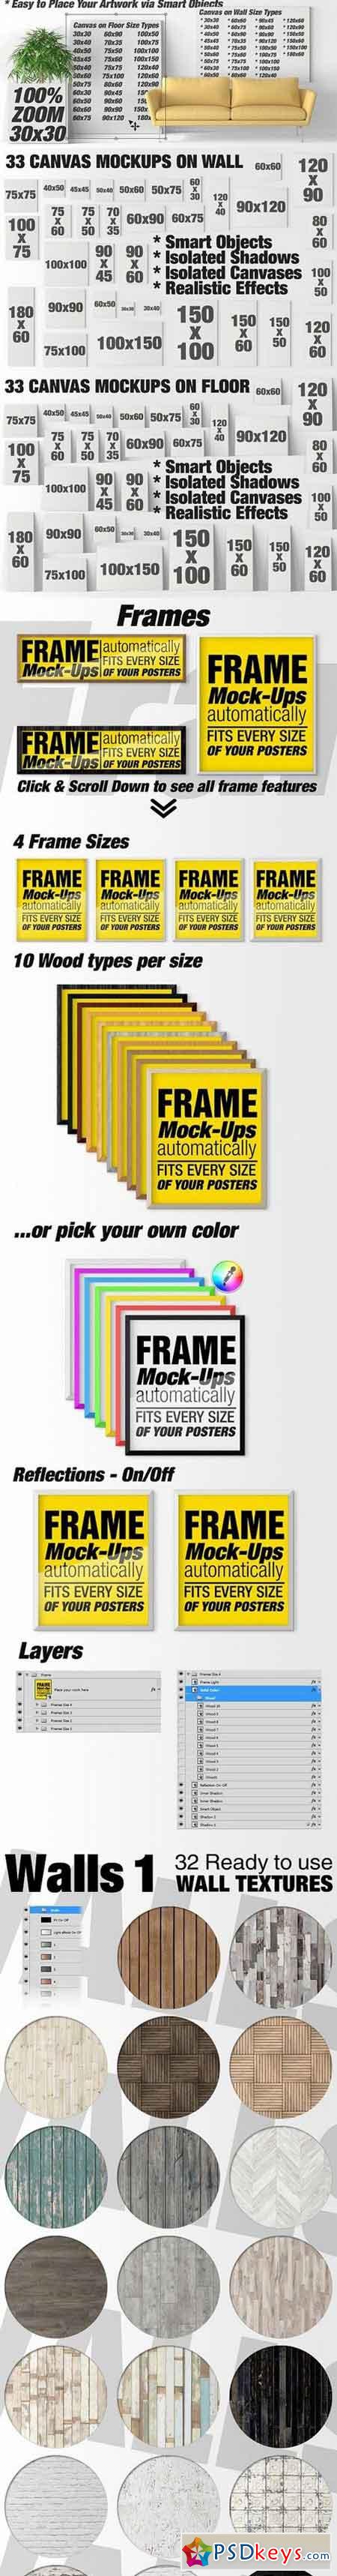 Canvas Mockups - Frames Mockups v 41 1503977